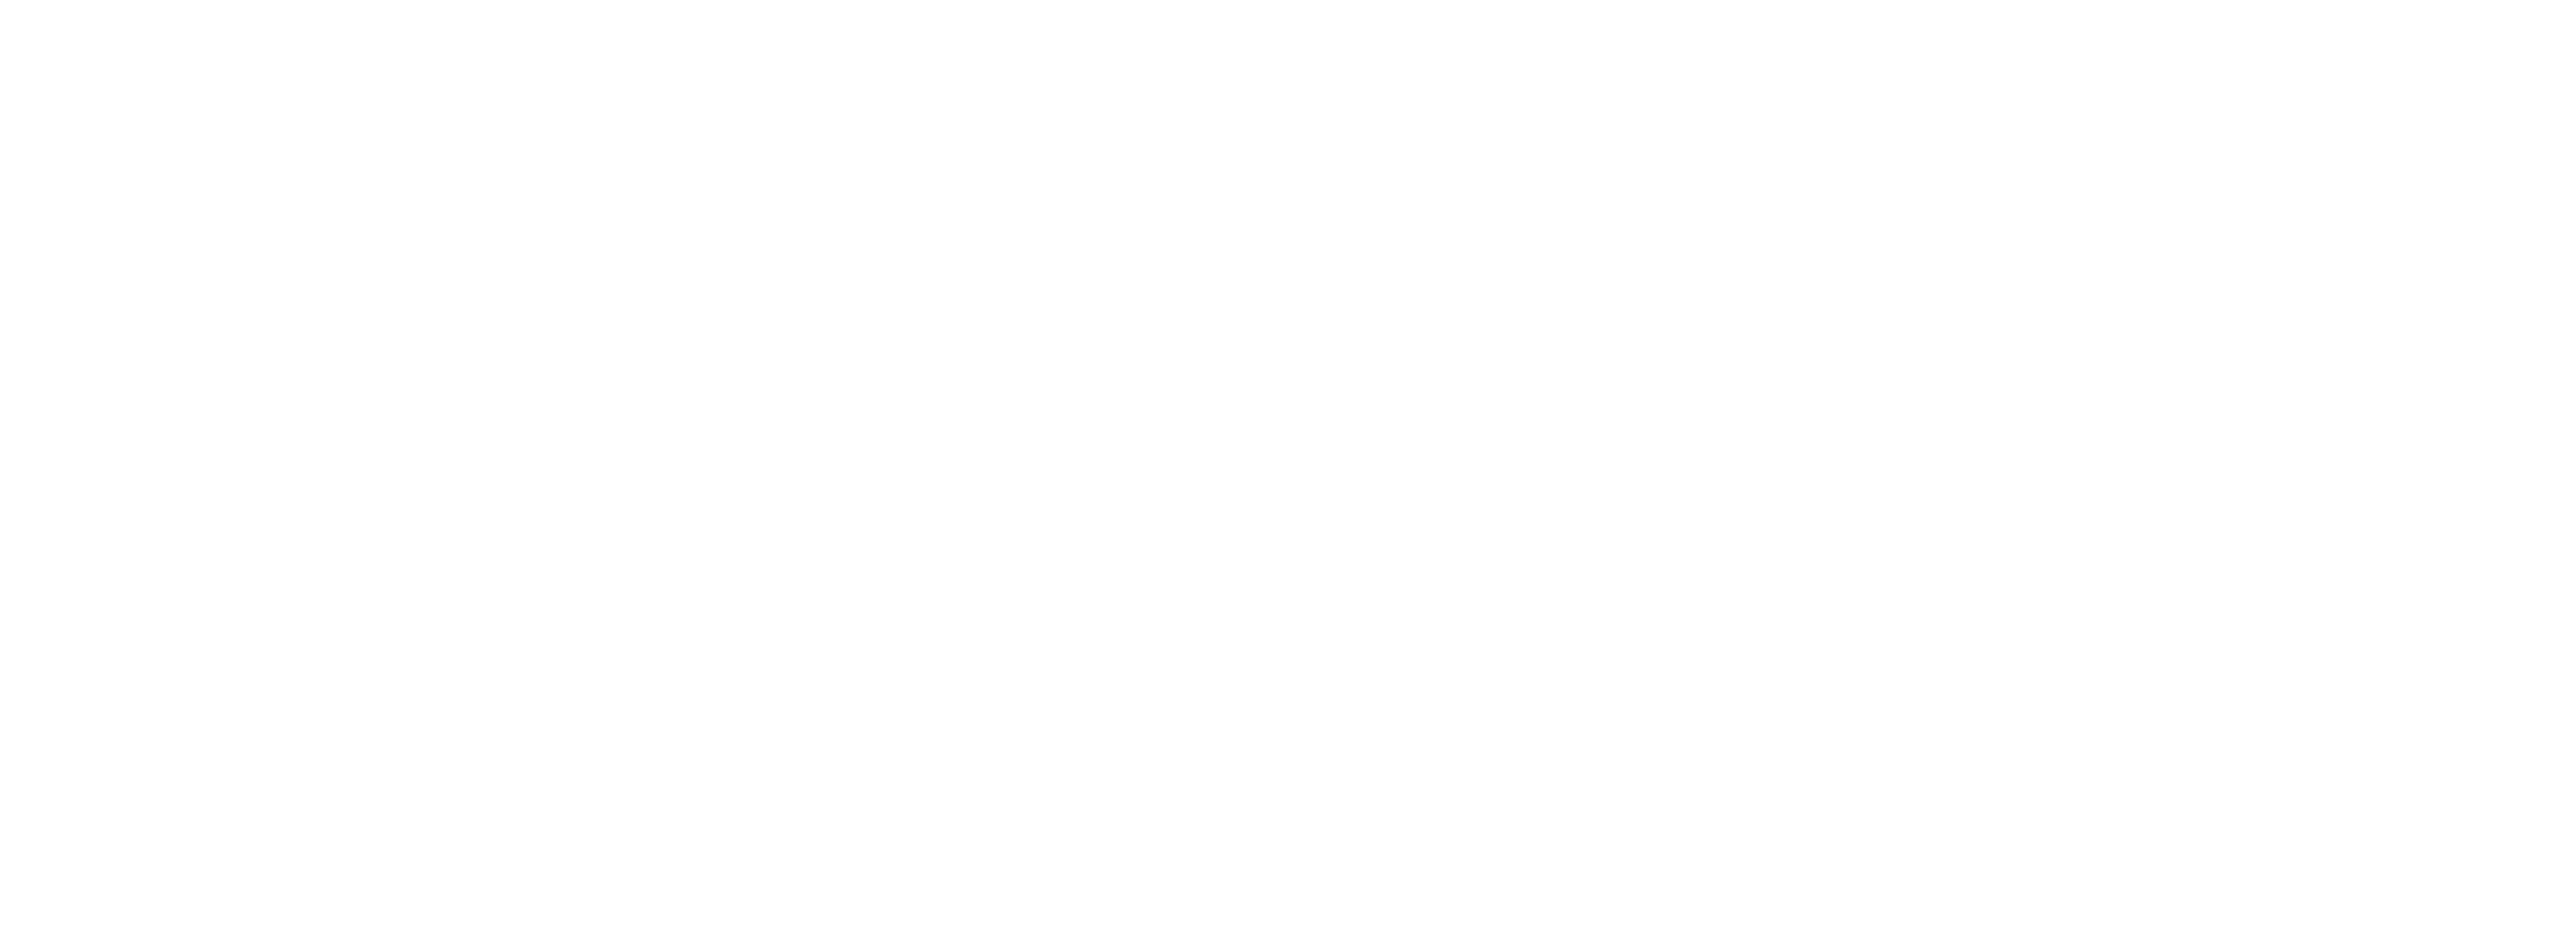 Morton Mccann White logo - no background